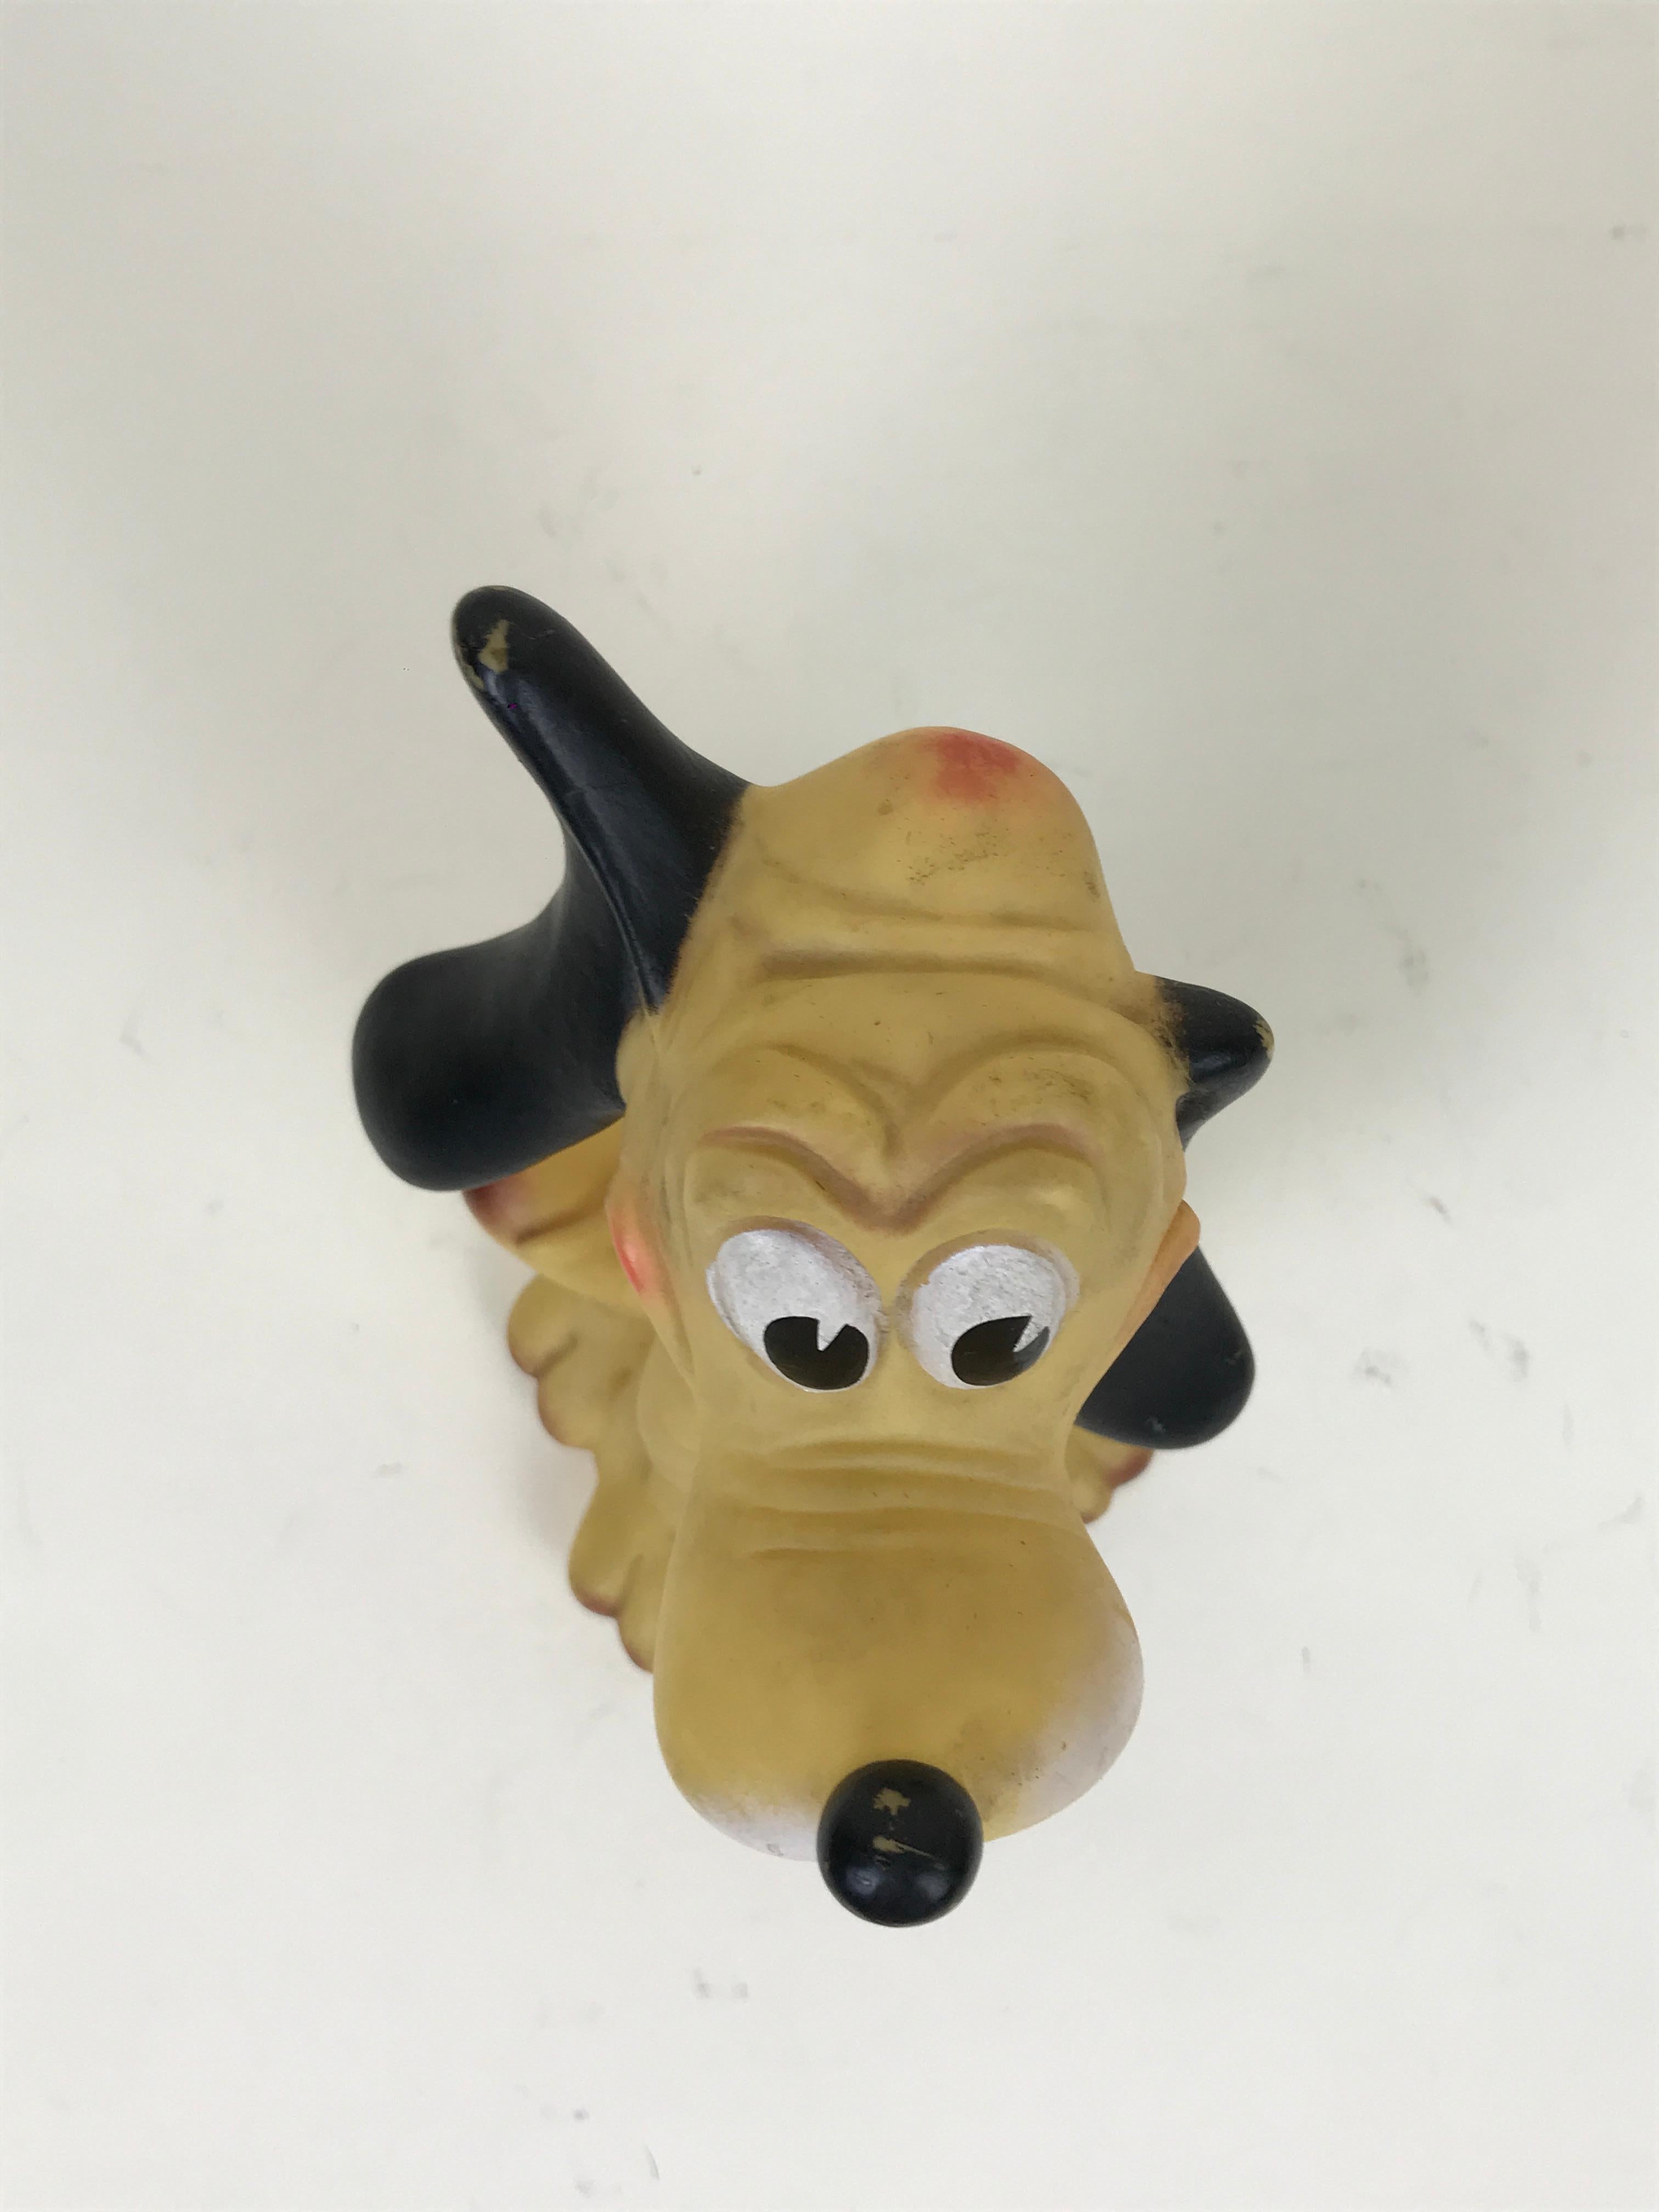 1960s Vintage Original Disney Pluto Rubber Squeak Toy Made in Italy Ledraplastic 3